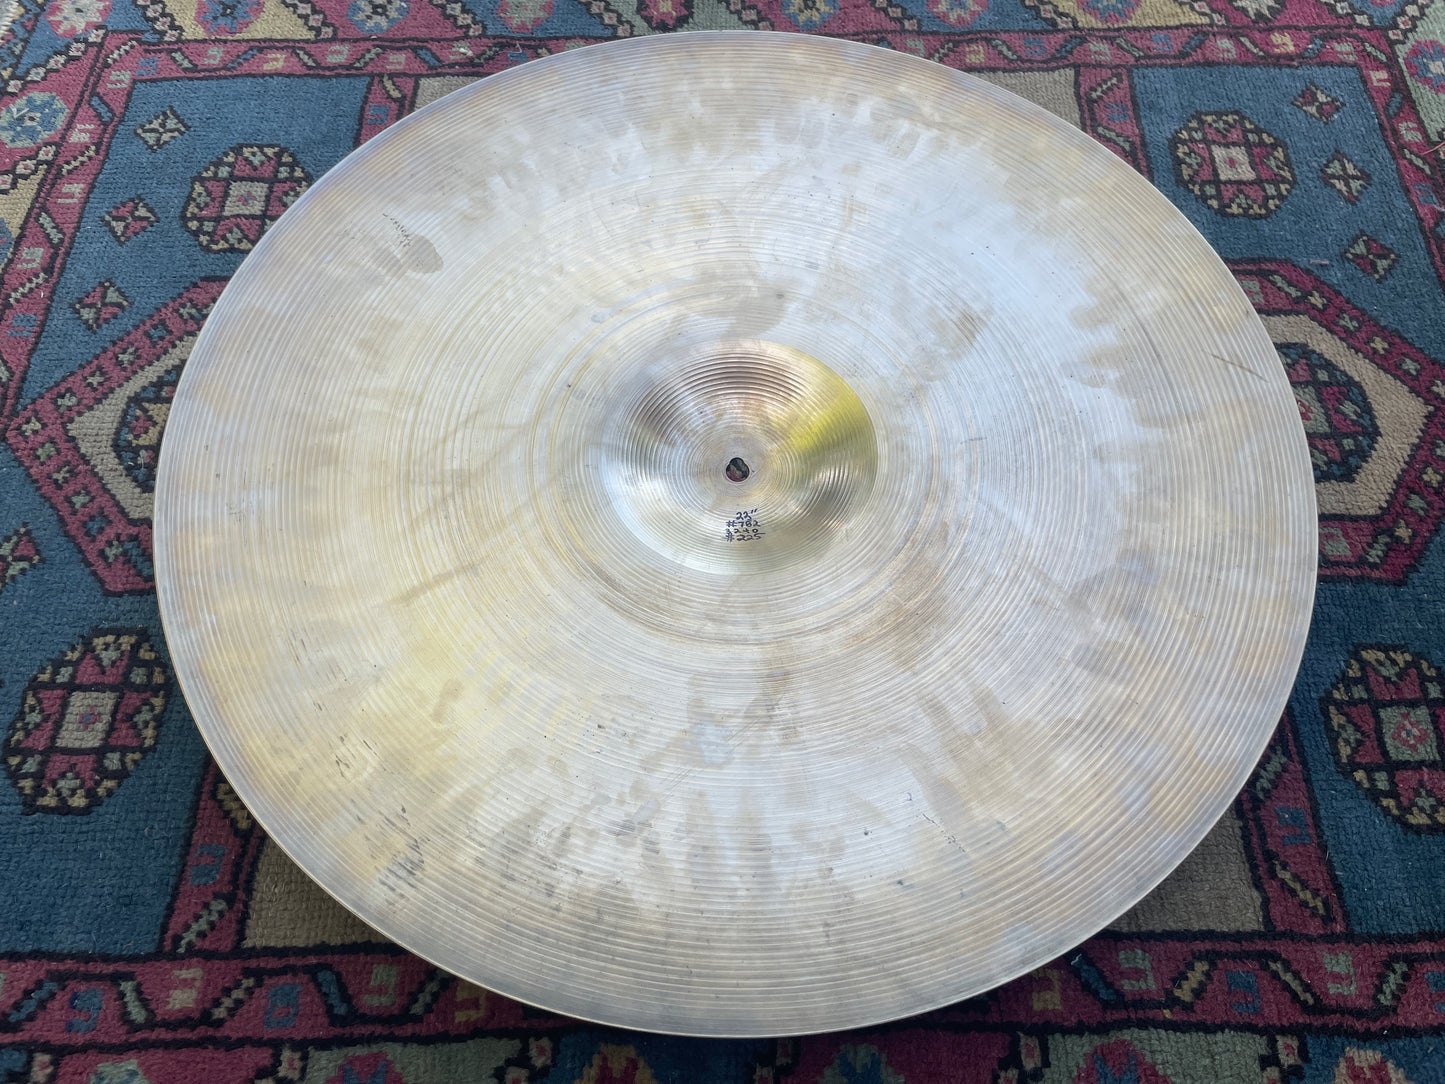 22" Zildjian A 1960s Ride Cymbal 3240g #782